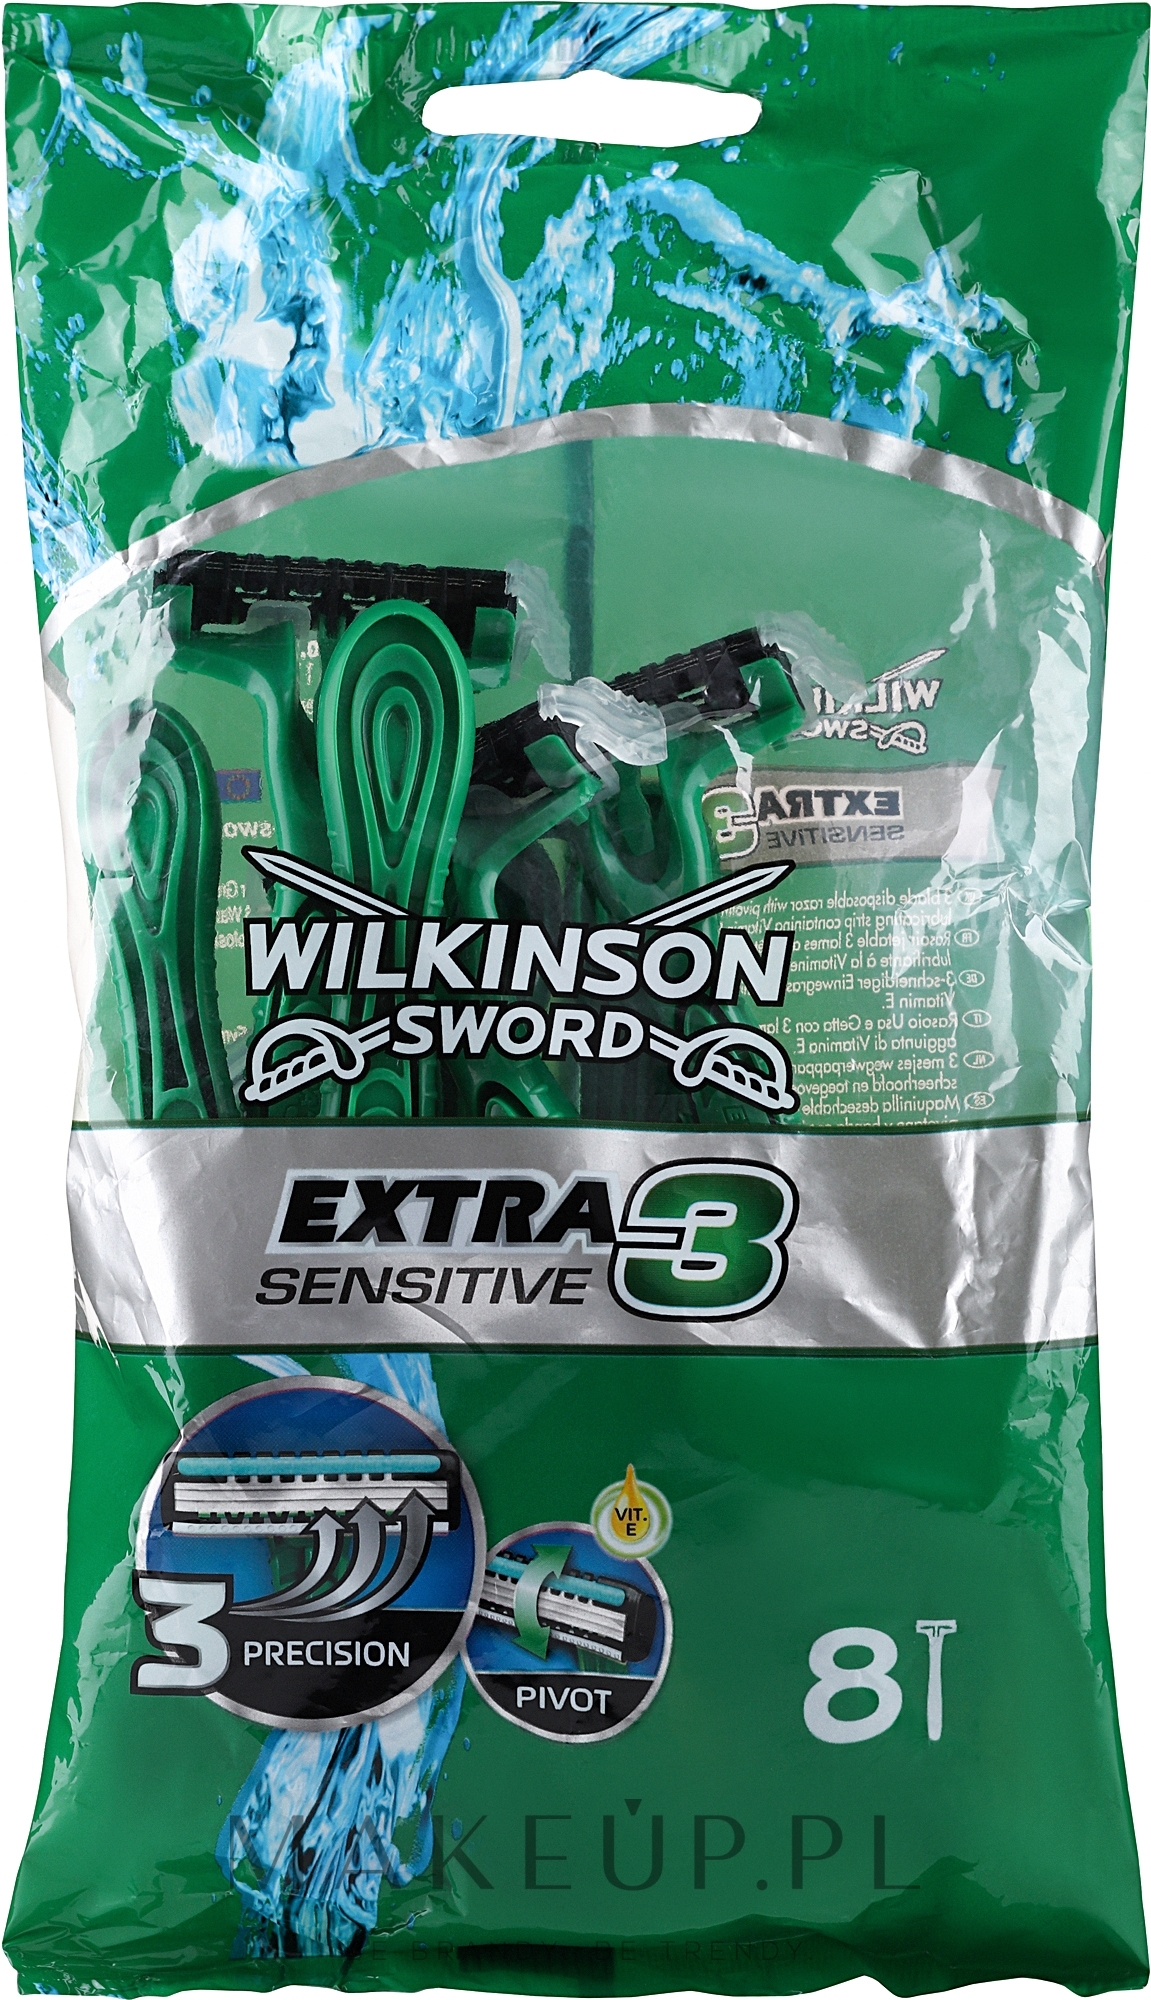 Jednorazowe maszynki do golenia, 8 szt. - Wilkinson Sword Xtreme3 Sensitive — Zdjęcie 8 szt.